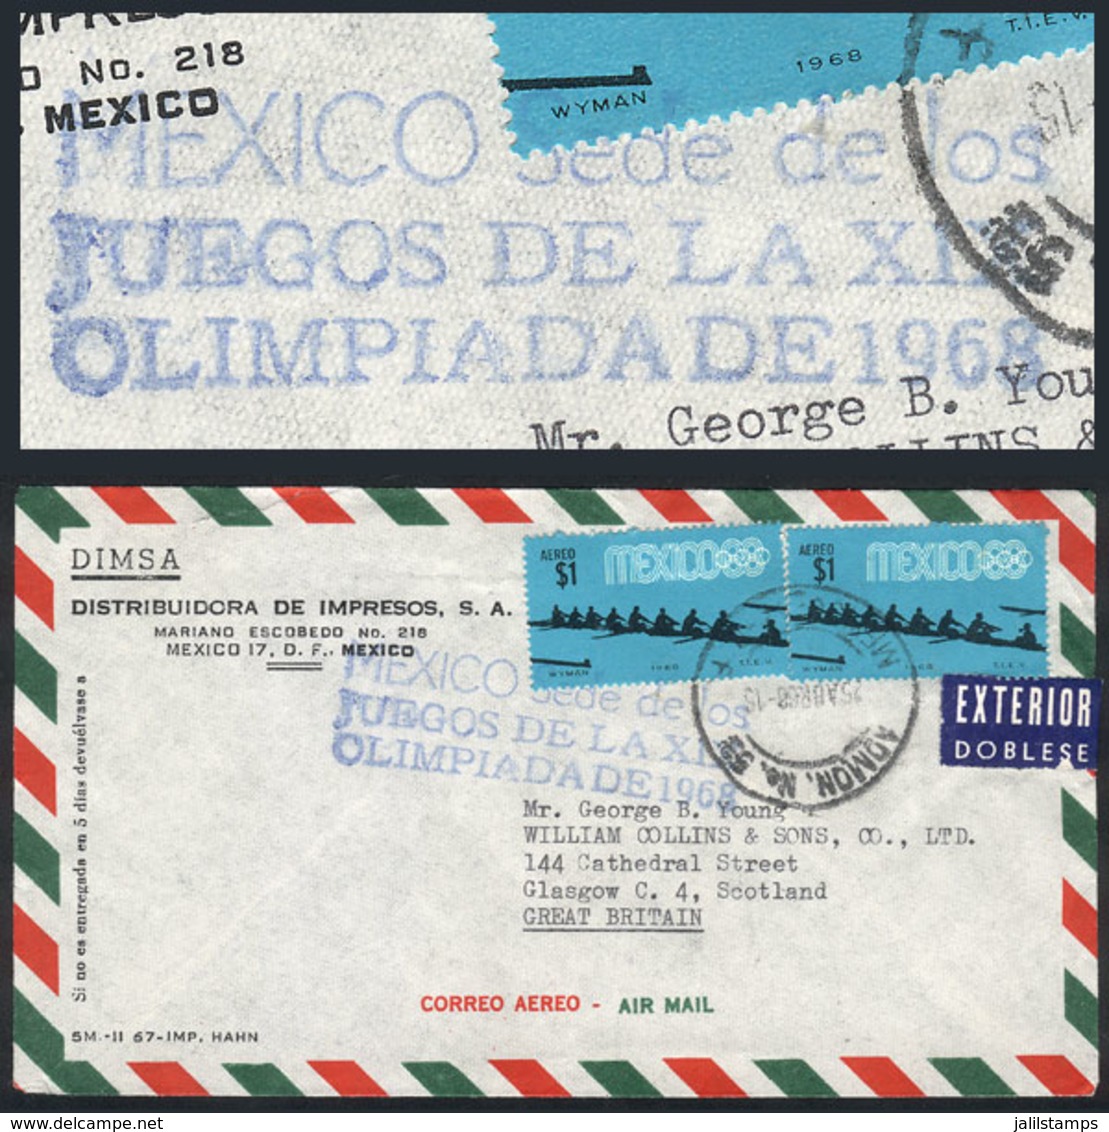 MEXICO: 25/AP/1968 Mexico DF - Great Britain, Airmail Cover With Blue Handstamp "MEXICO SEDE DE LOS JUEGOS DE LA XIX OLI - Messico